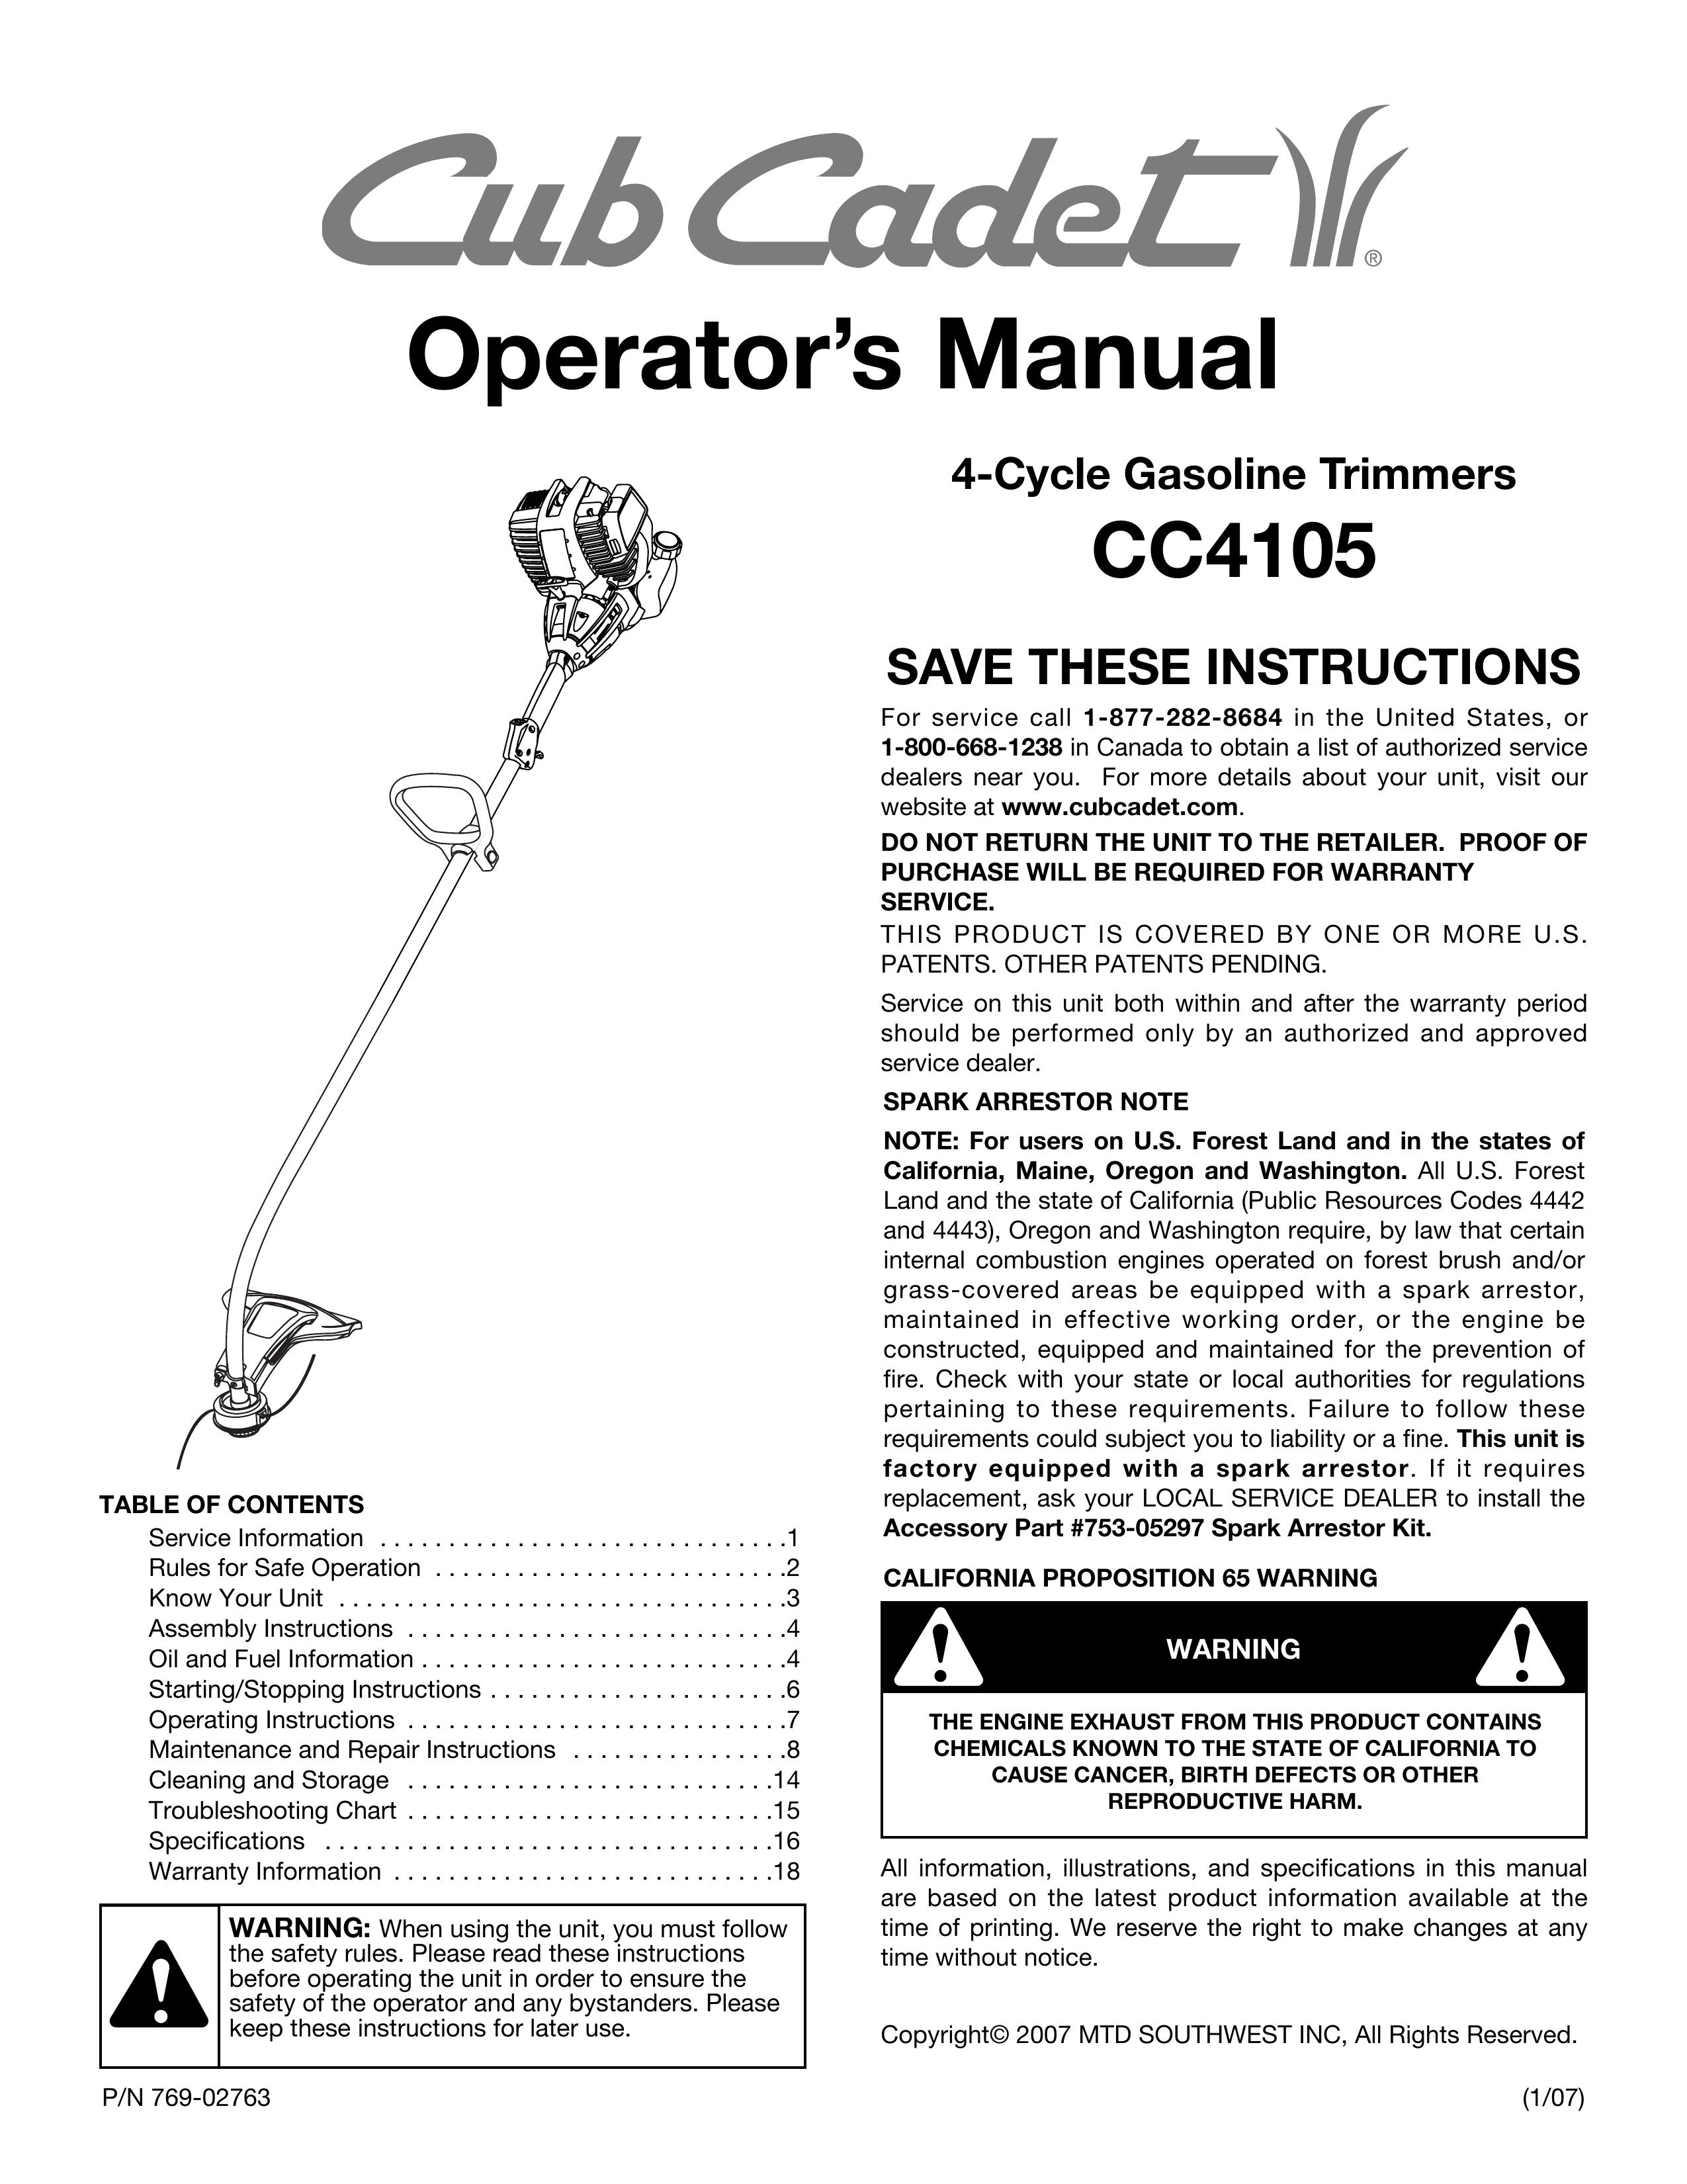 Cub Cadet CC4105 Trimmer User Manual